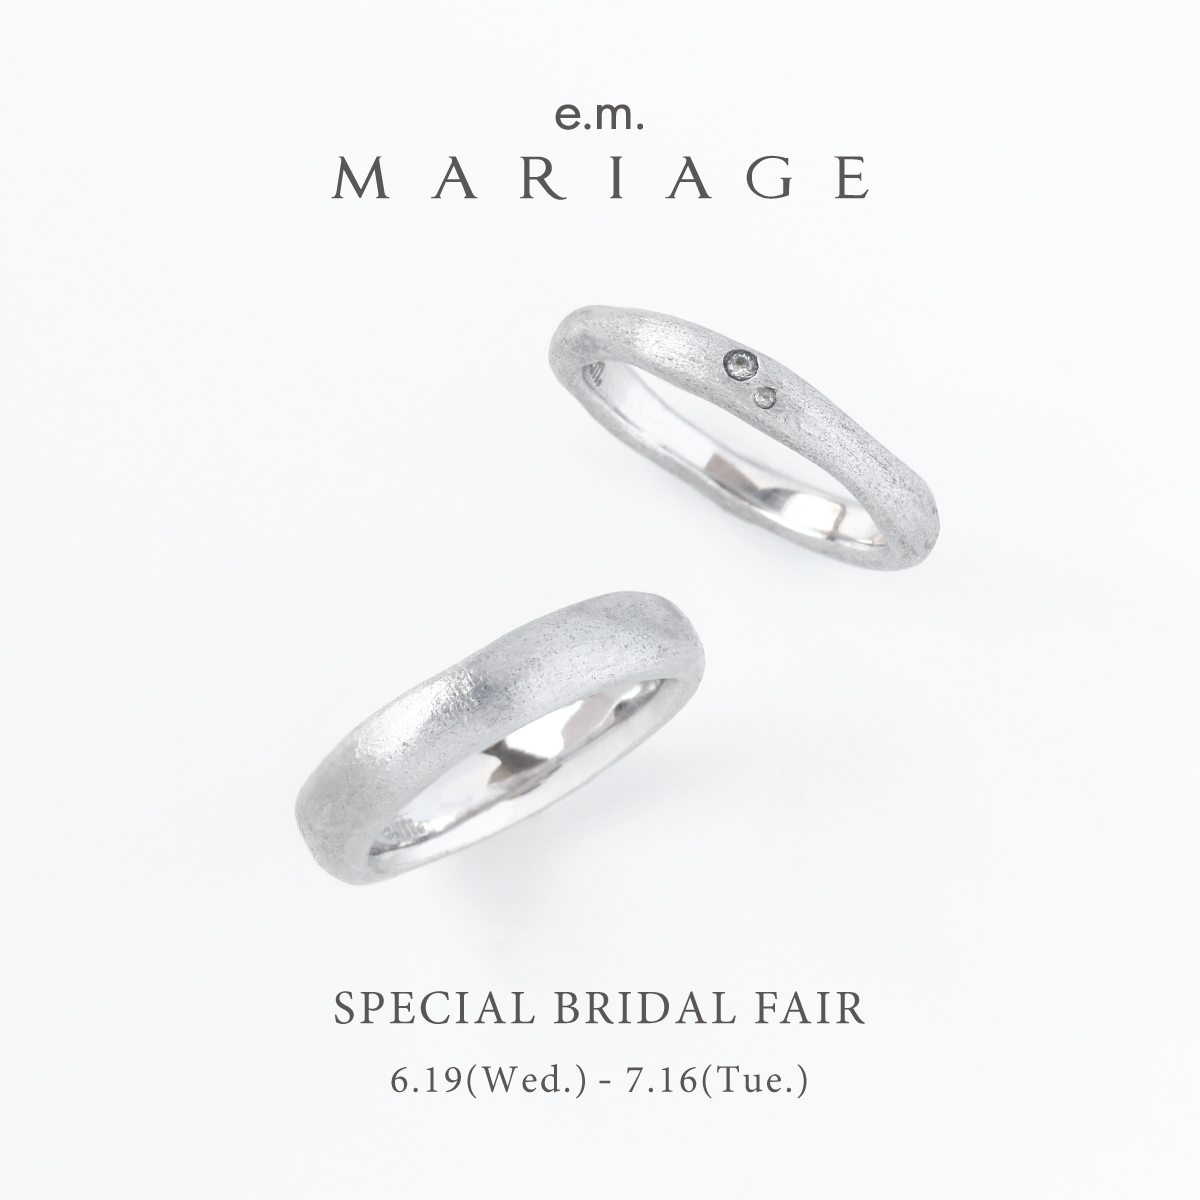 e.m.MARIAGE_specialbridalfair